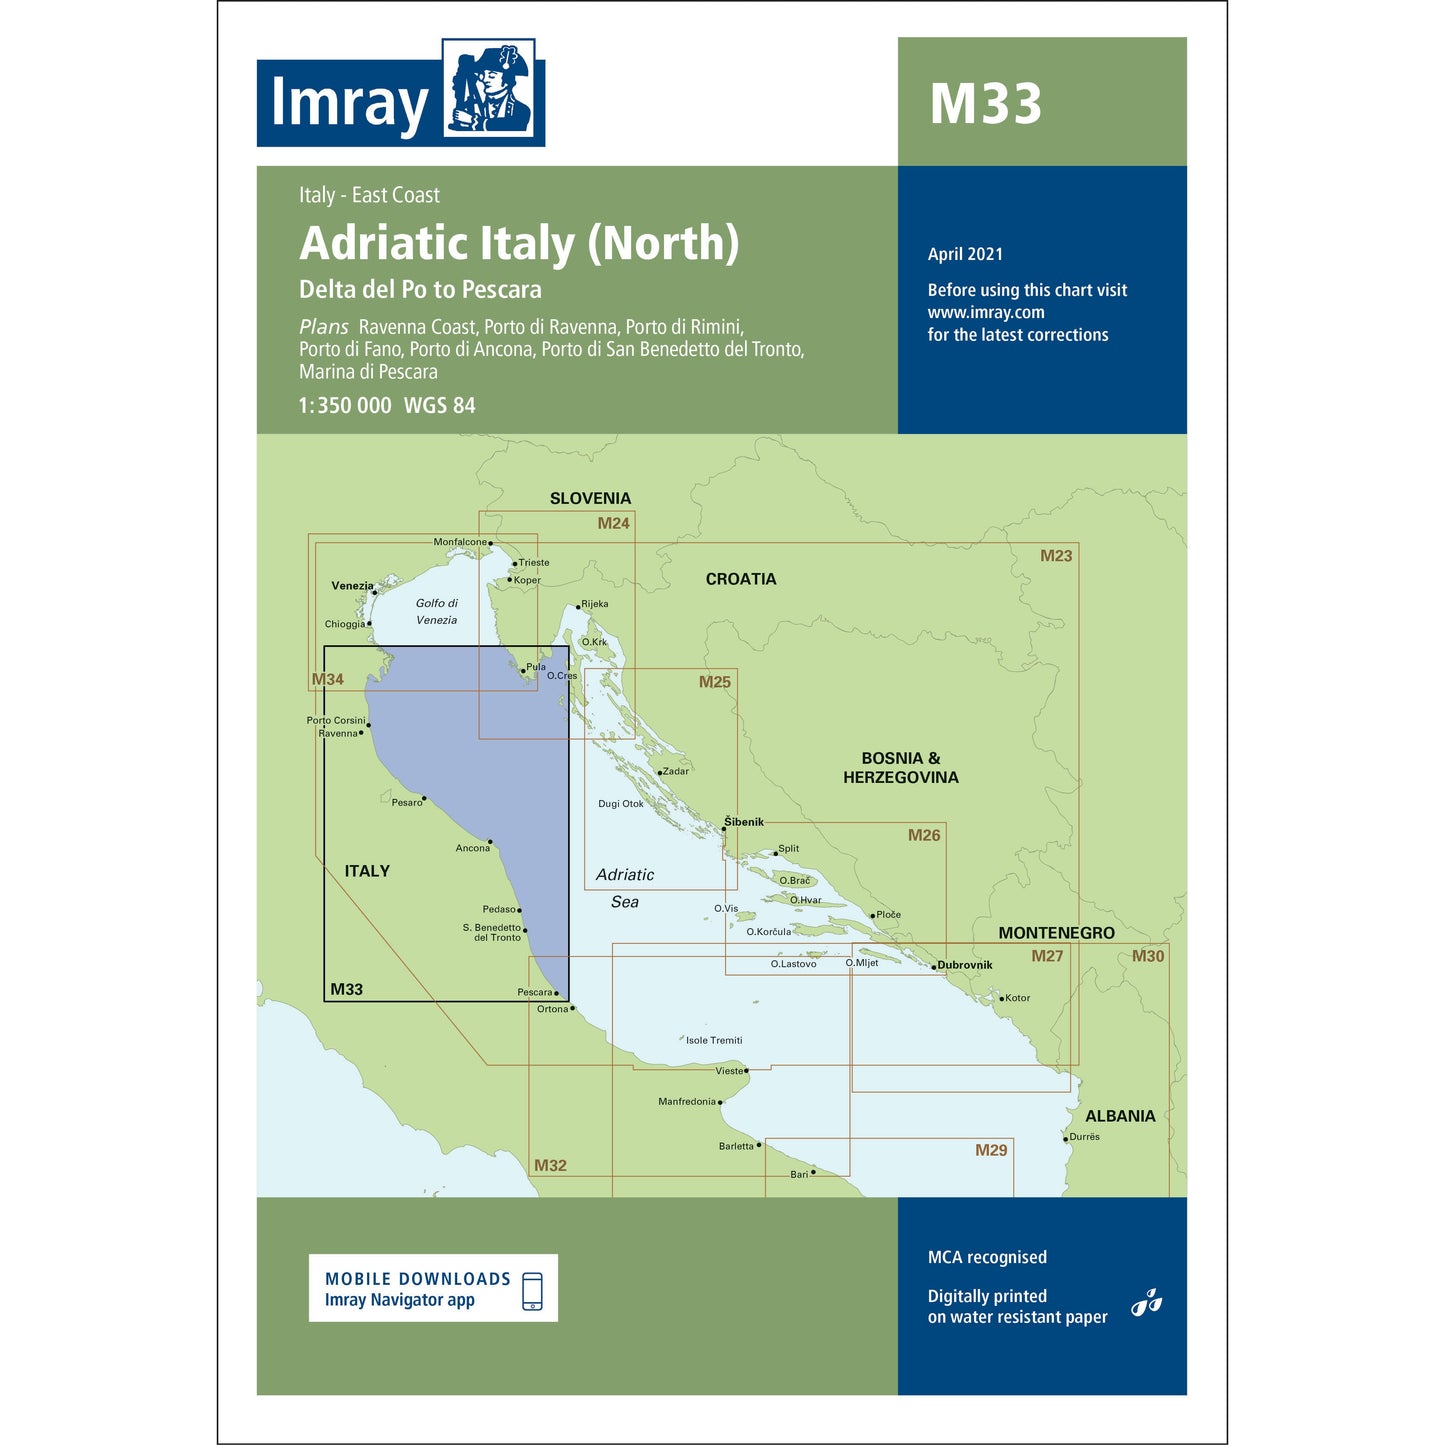 CARTE IMRAY M33 ADRIATIC ITALY (NORTH)